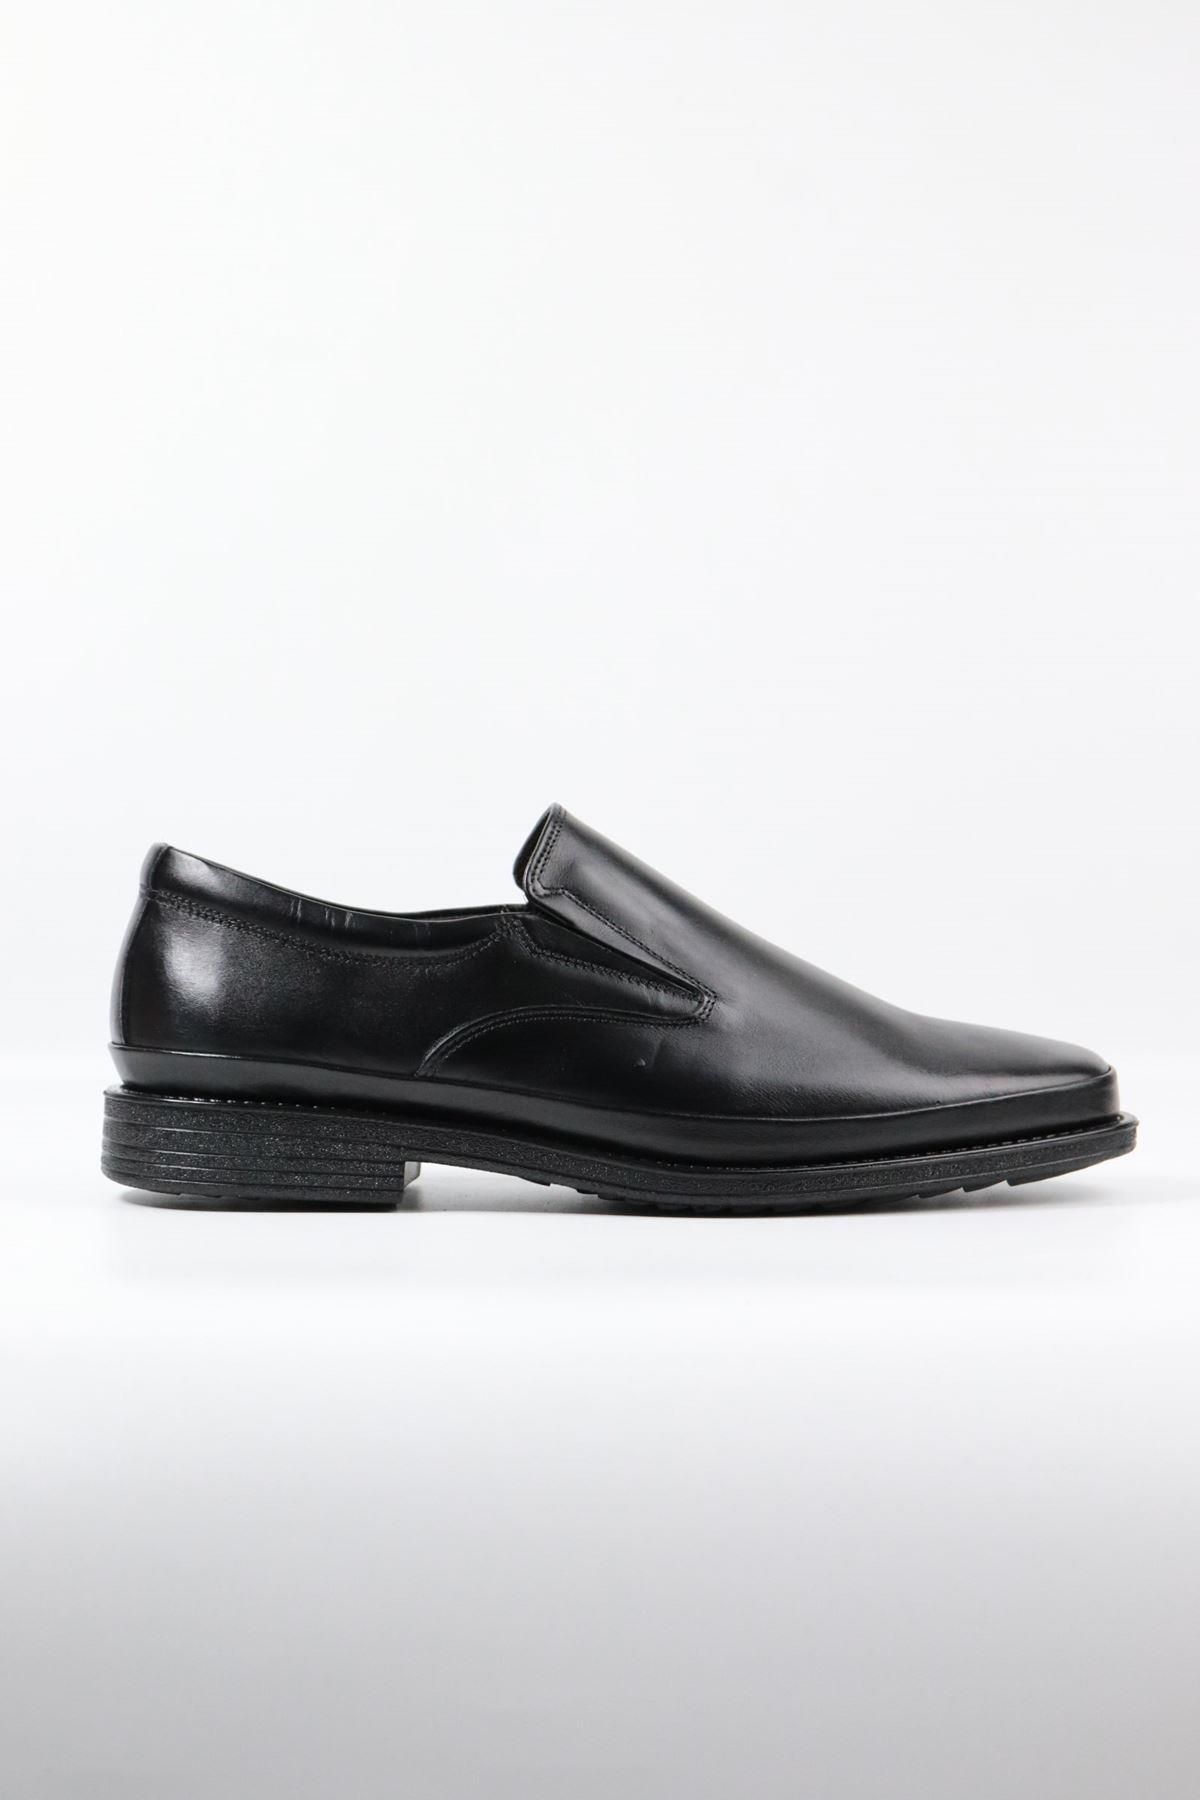 DANACI Danacı - 668 Siyah Hakiki Deri Erkek Klasik Ayakkabı